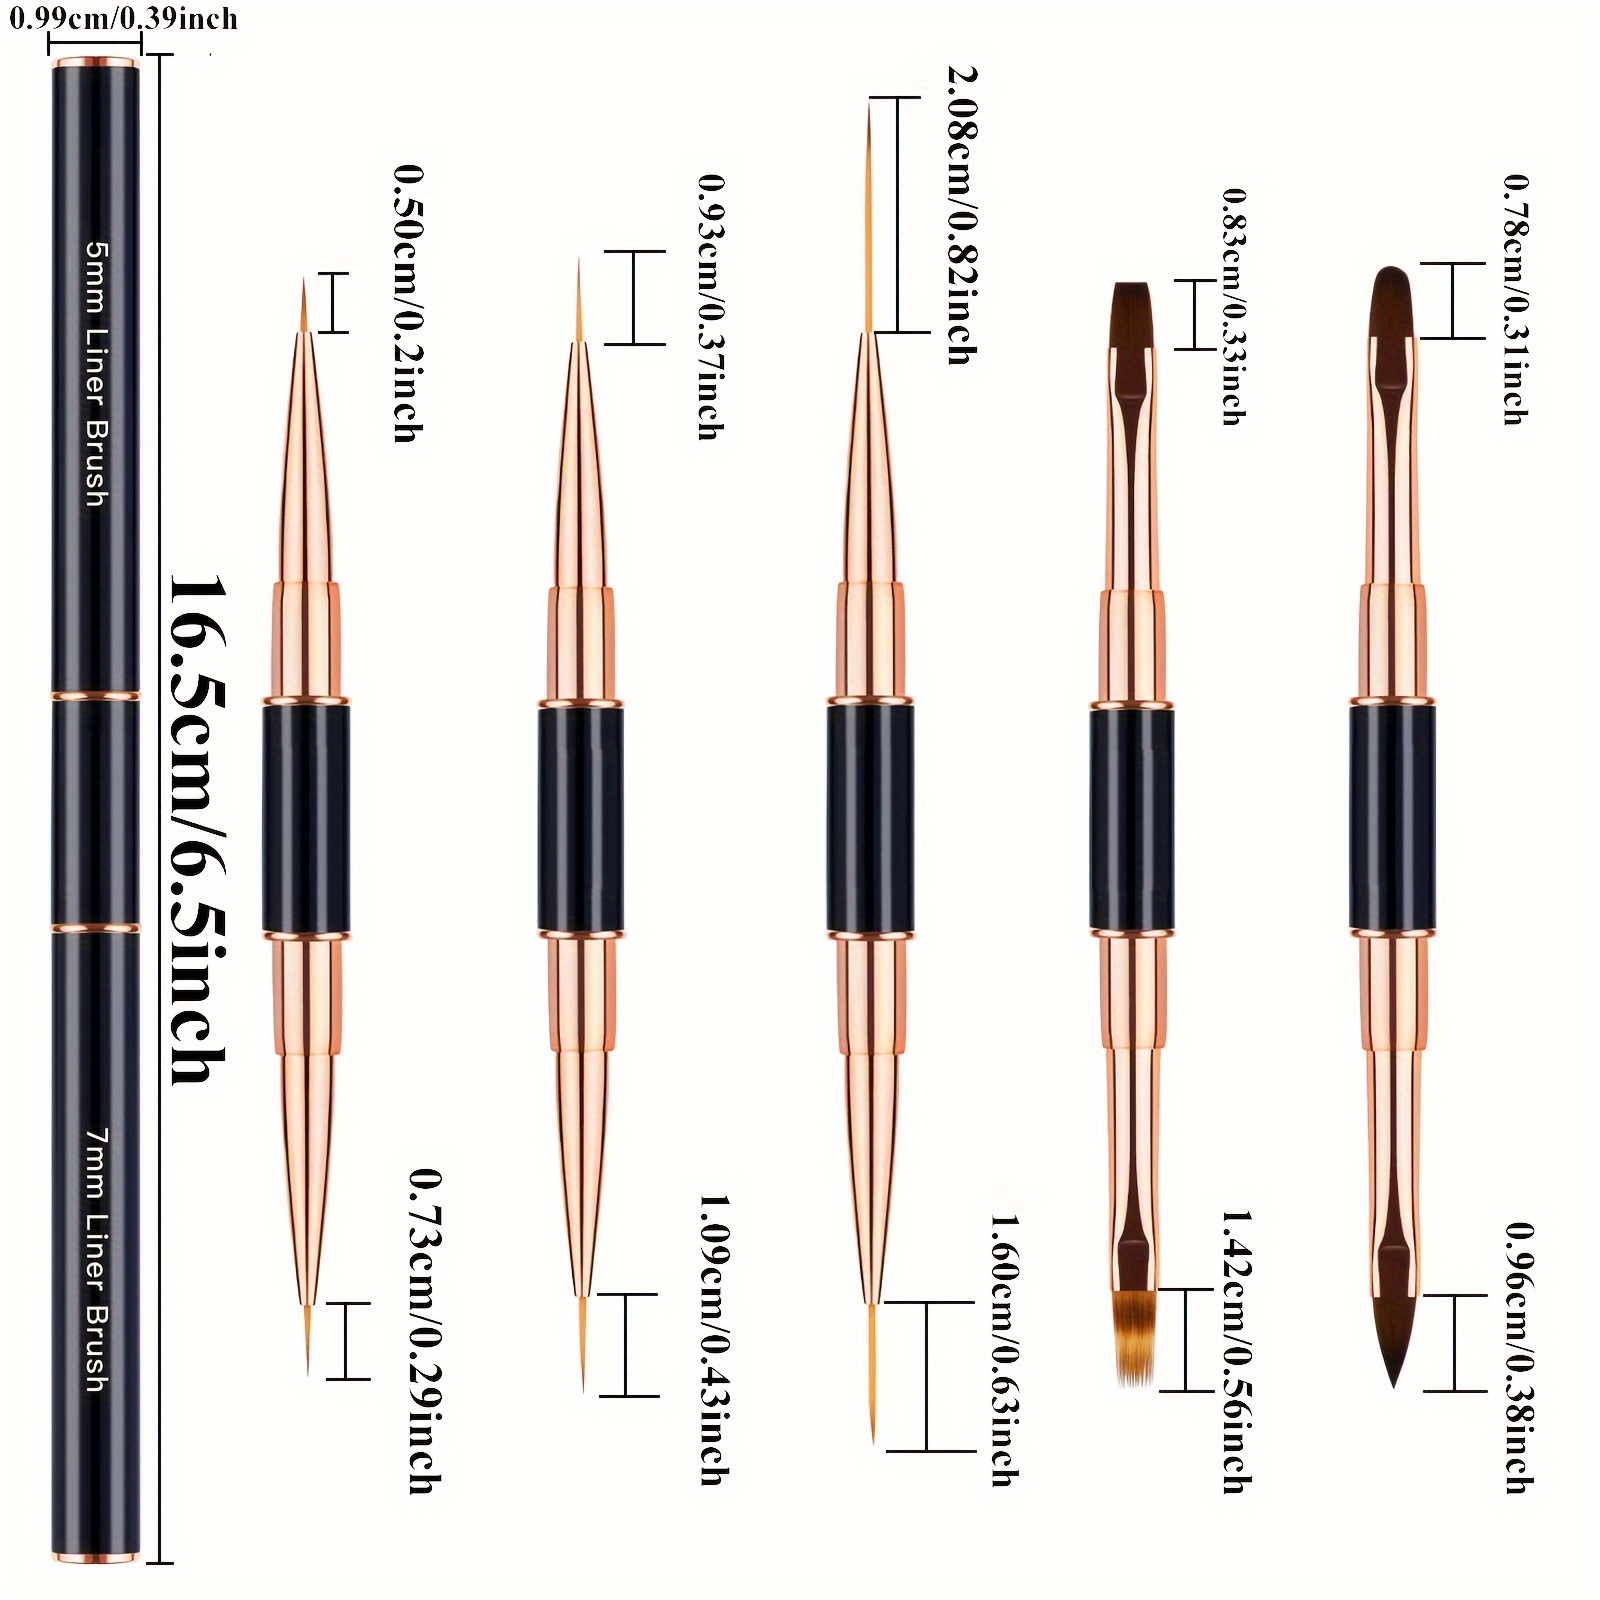 Double-Ended Nail Art Brushes, TEOYALL 5 PCS Nail Design Tools Kit  Including Nail Liner Brush and Nail Dotting Pens for UV Gel Nail Home Salon